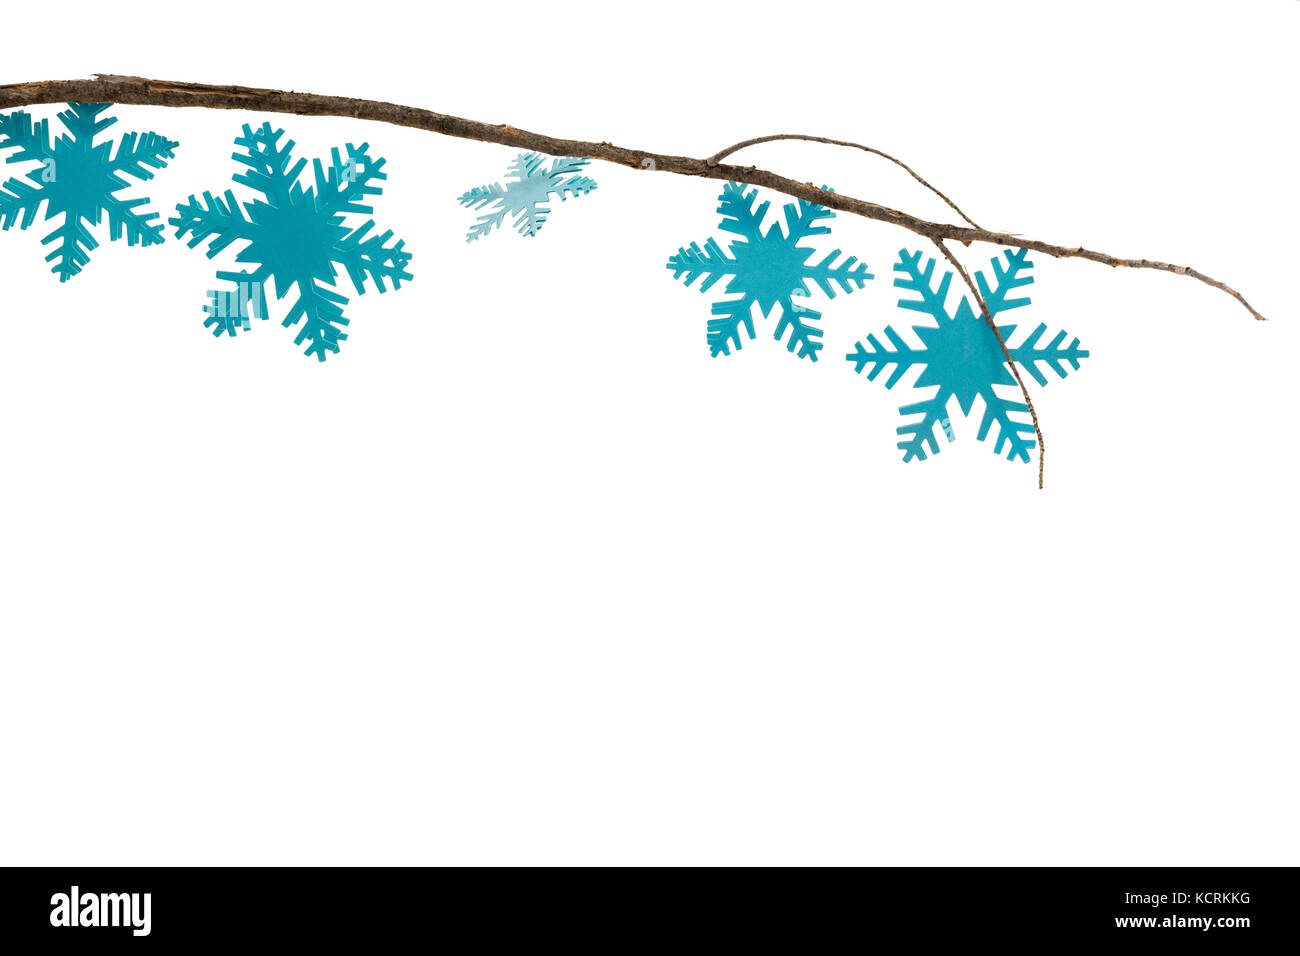 Close-up of snowflakes décorées sur branch against white background Banque D'Images